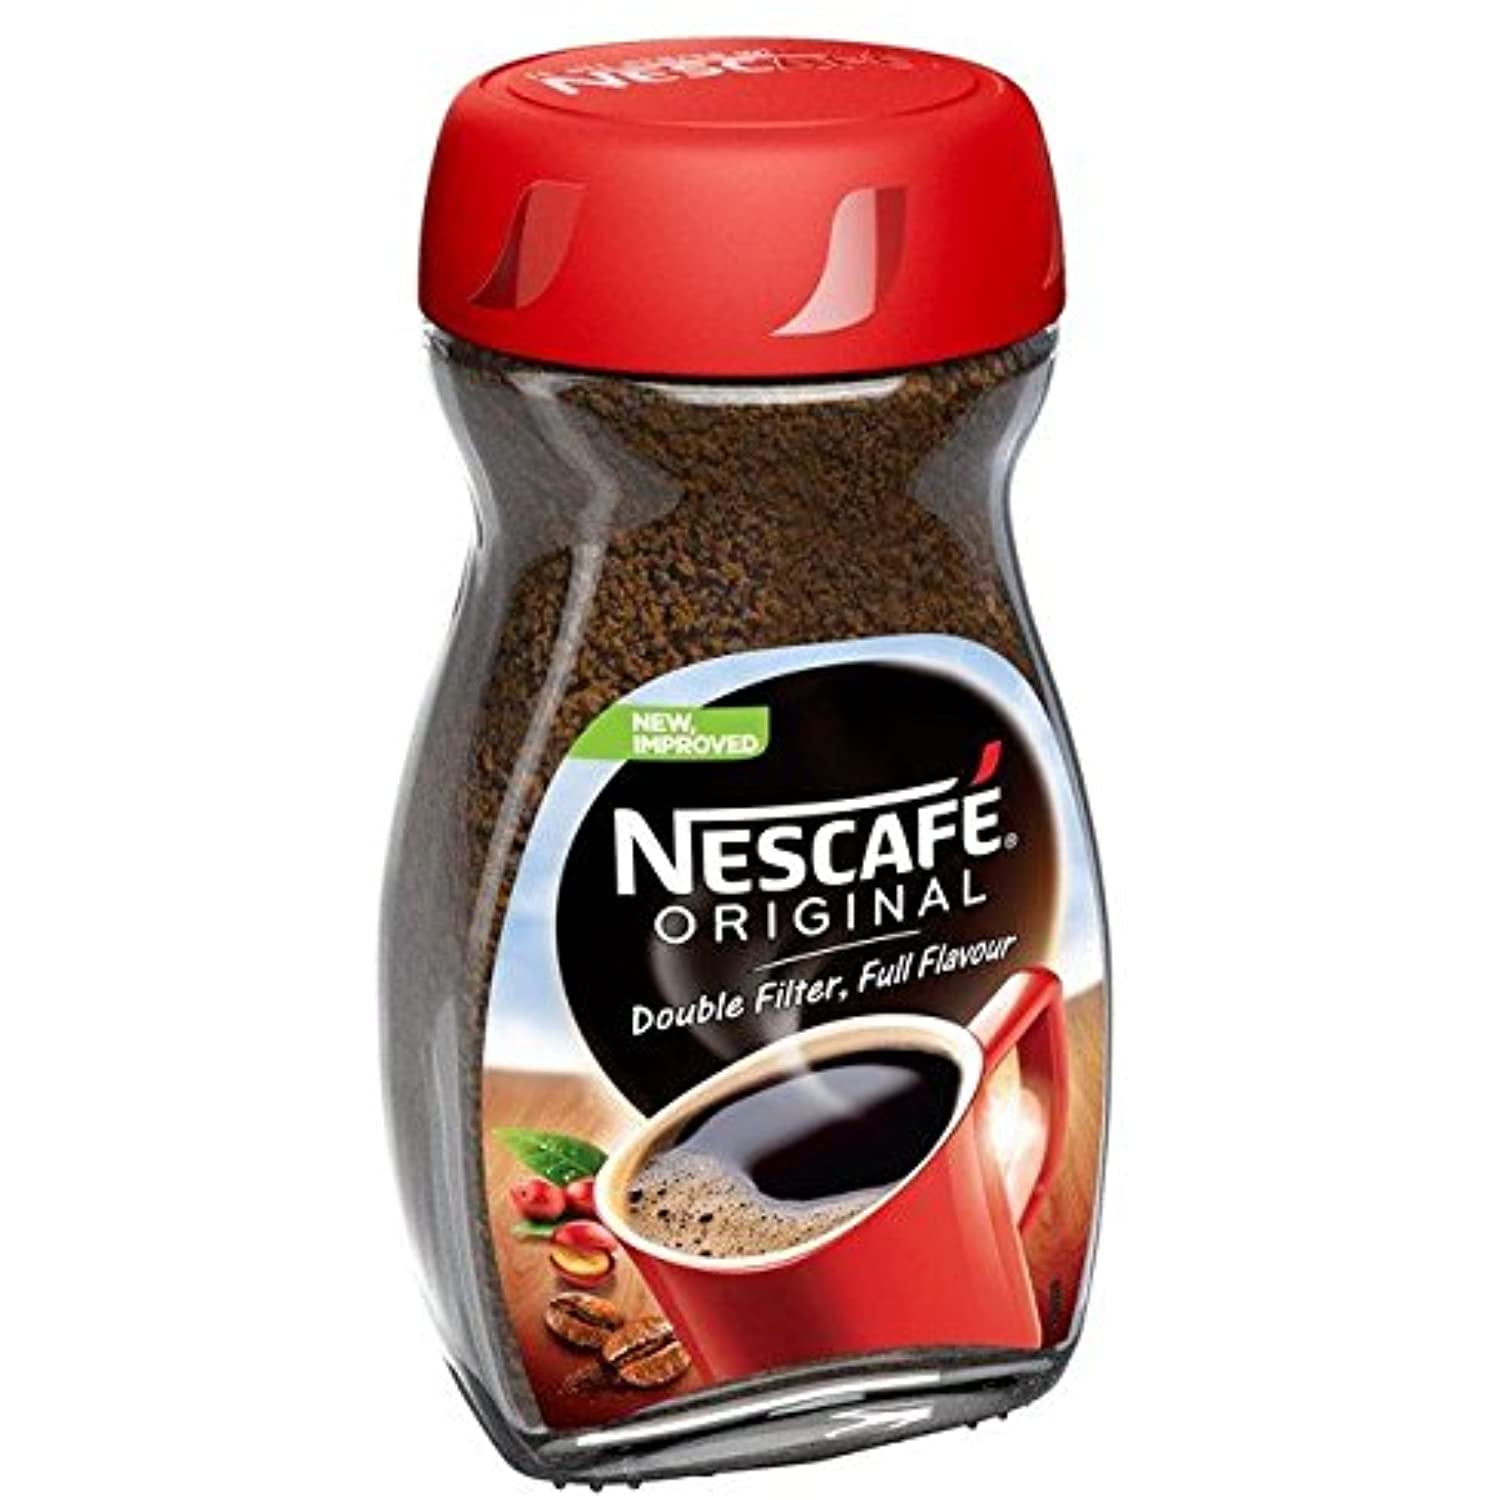 Discover Original Nescafe Coffee Online